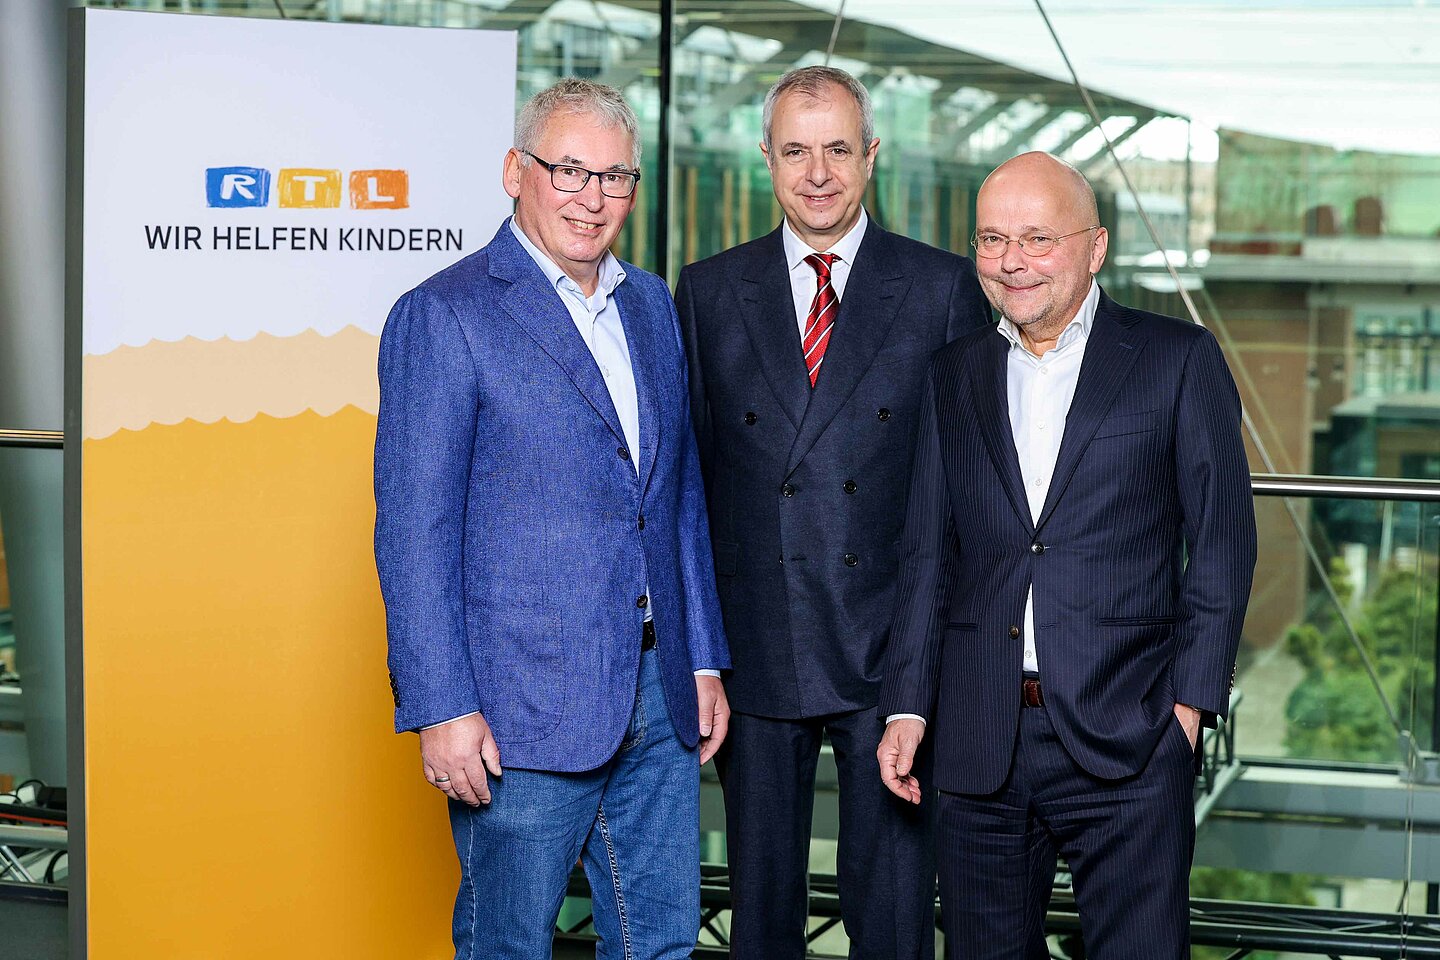 Der Beirat der „Stiftung RTL – Wir helfen Kindern e.V.“ (v. li.): Herbert Nather (Steuerberater), Dr. Peter Dieners (Rechtsanwalt) und Jens Pollmann (Wirtschaftsprüfer und Steuerberater). Foto: RTL/Frank W. Hempel